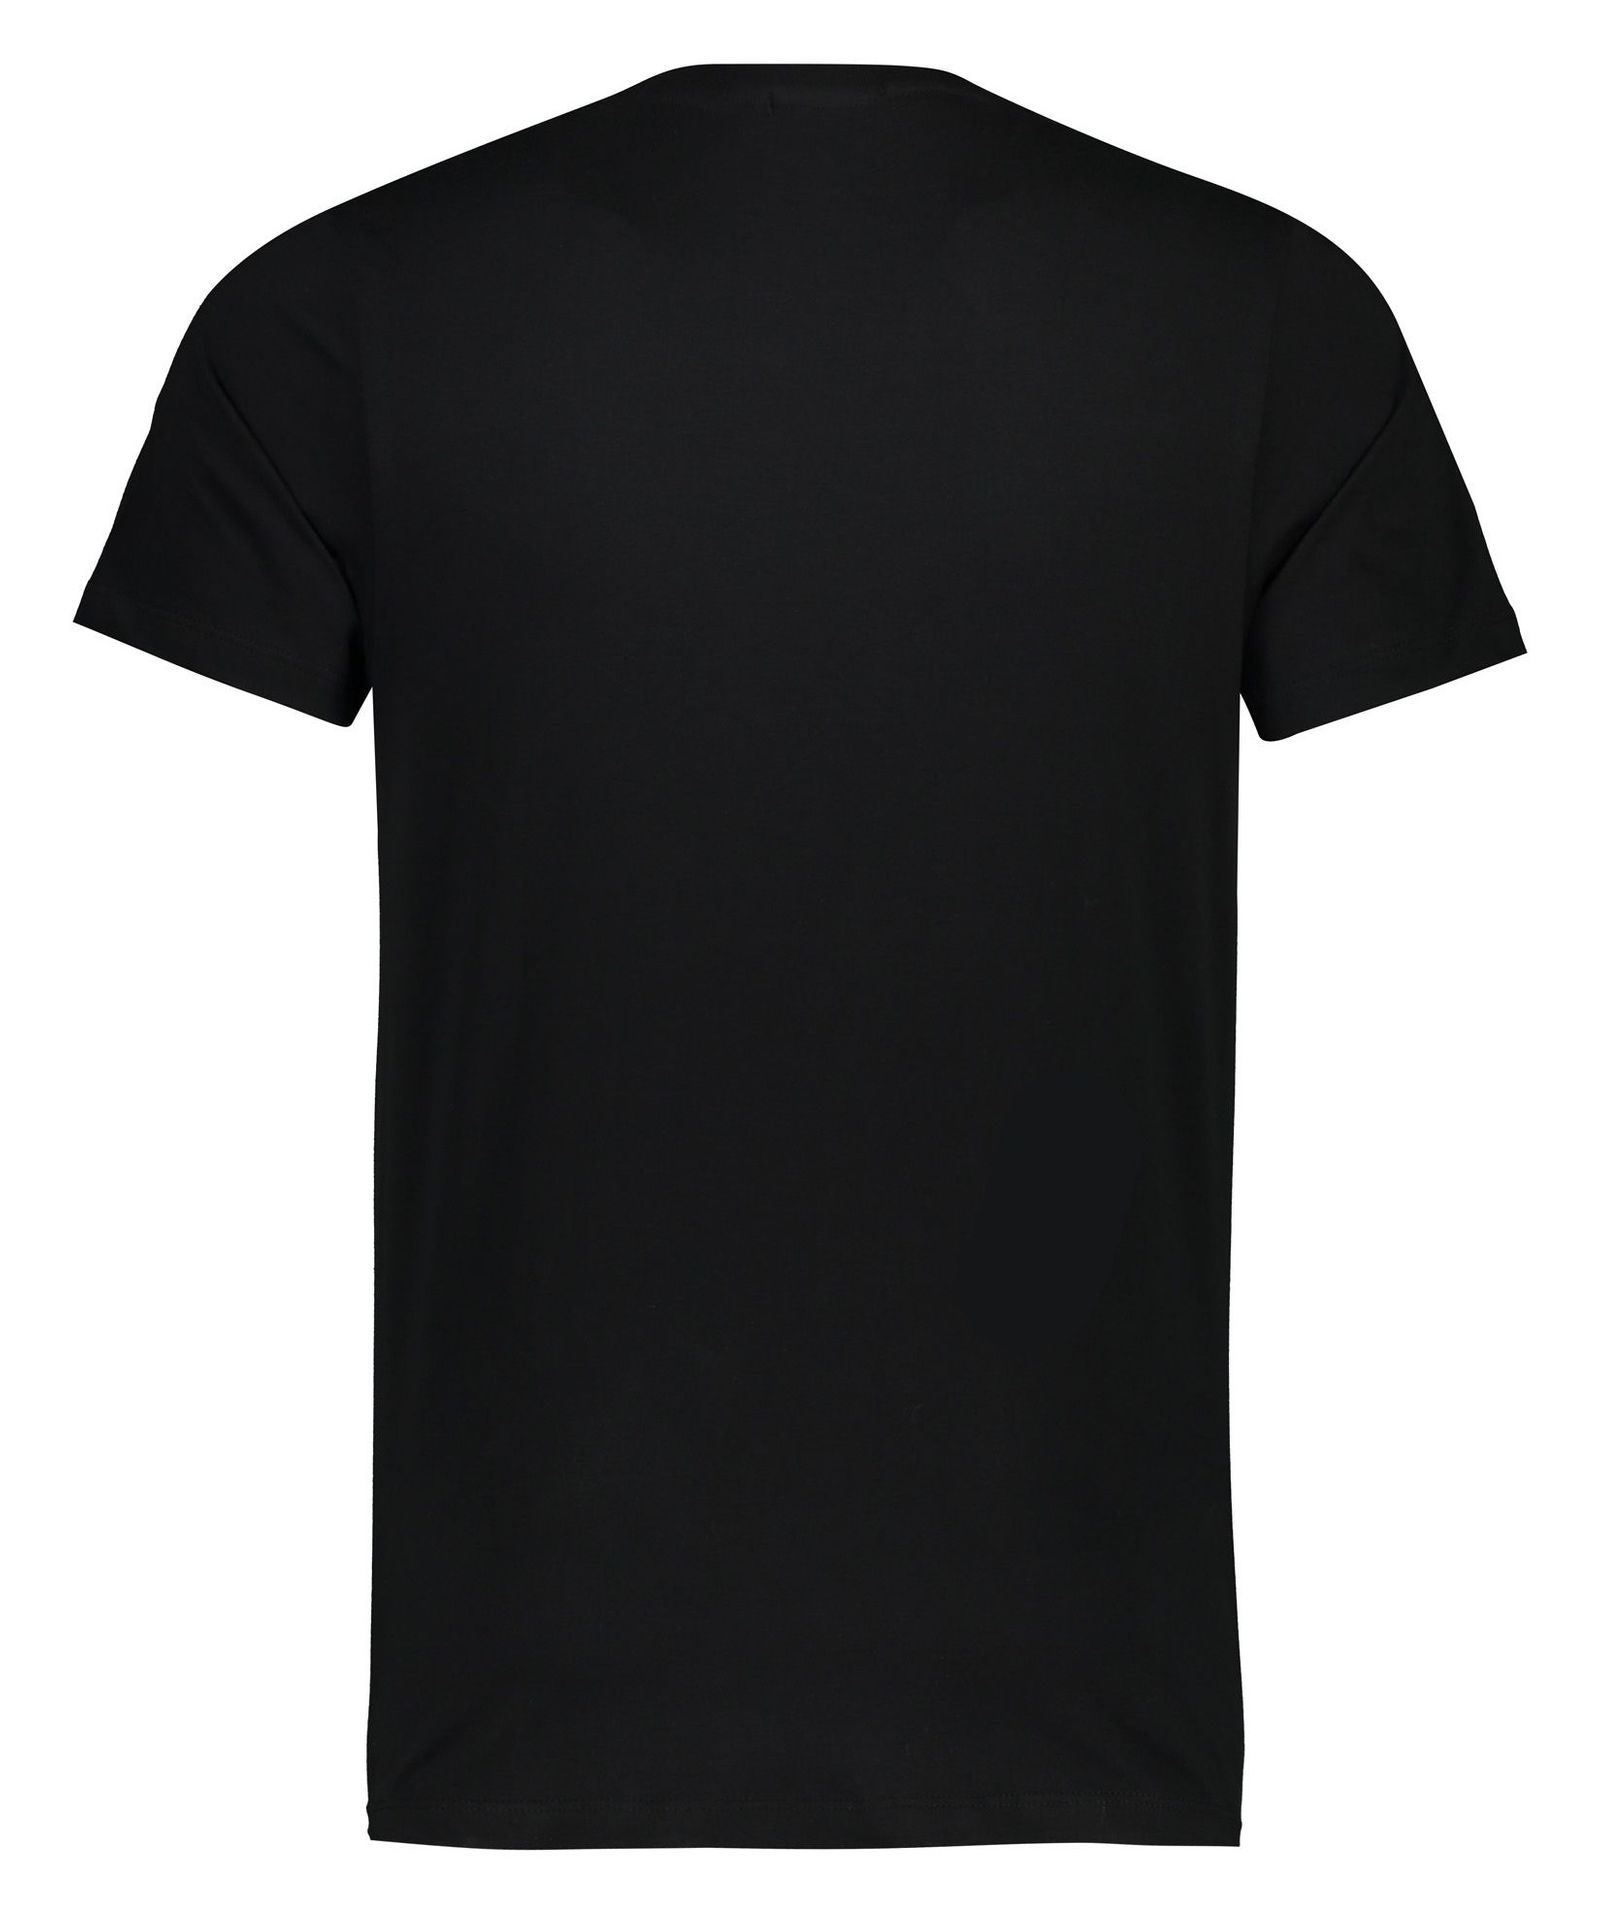 تی شرت مردانه آر ان اس مدل 1131110-99 -  - 4